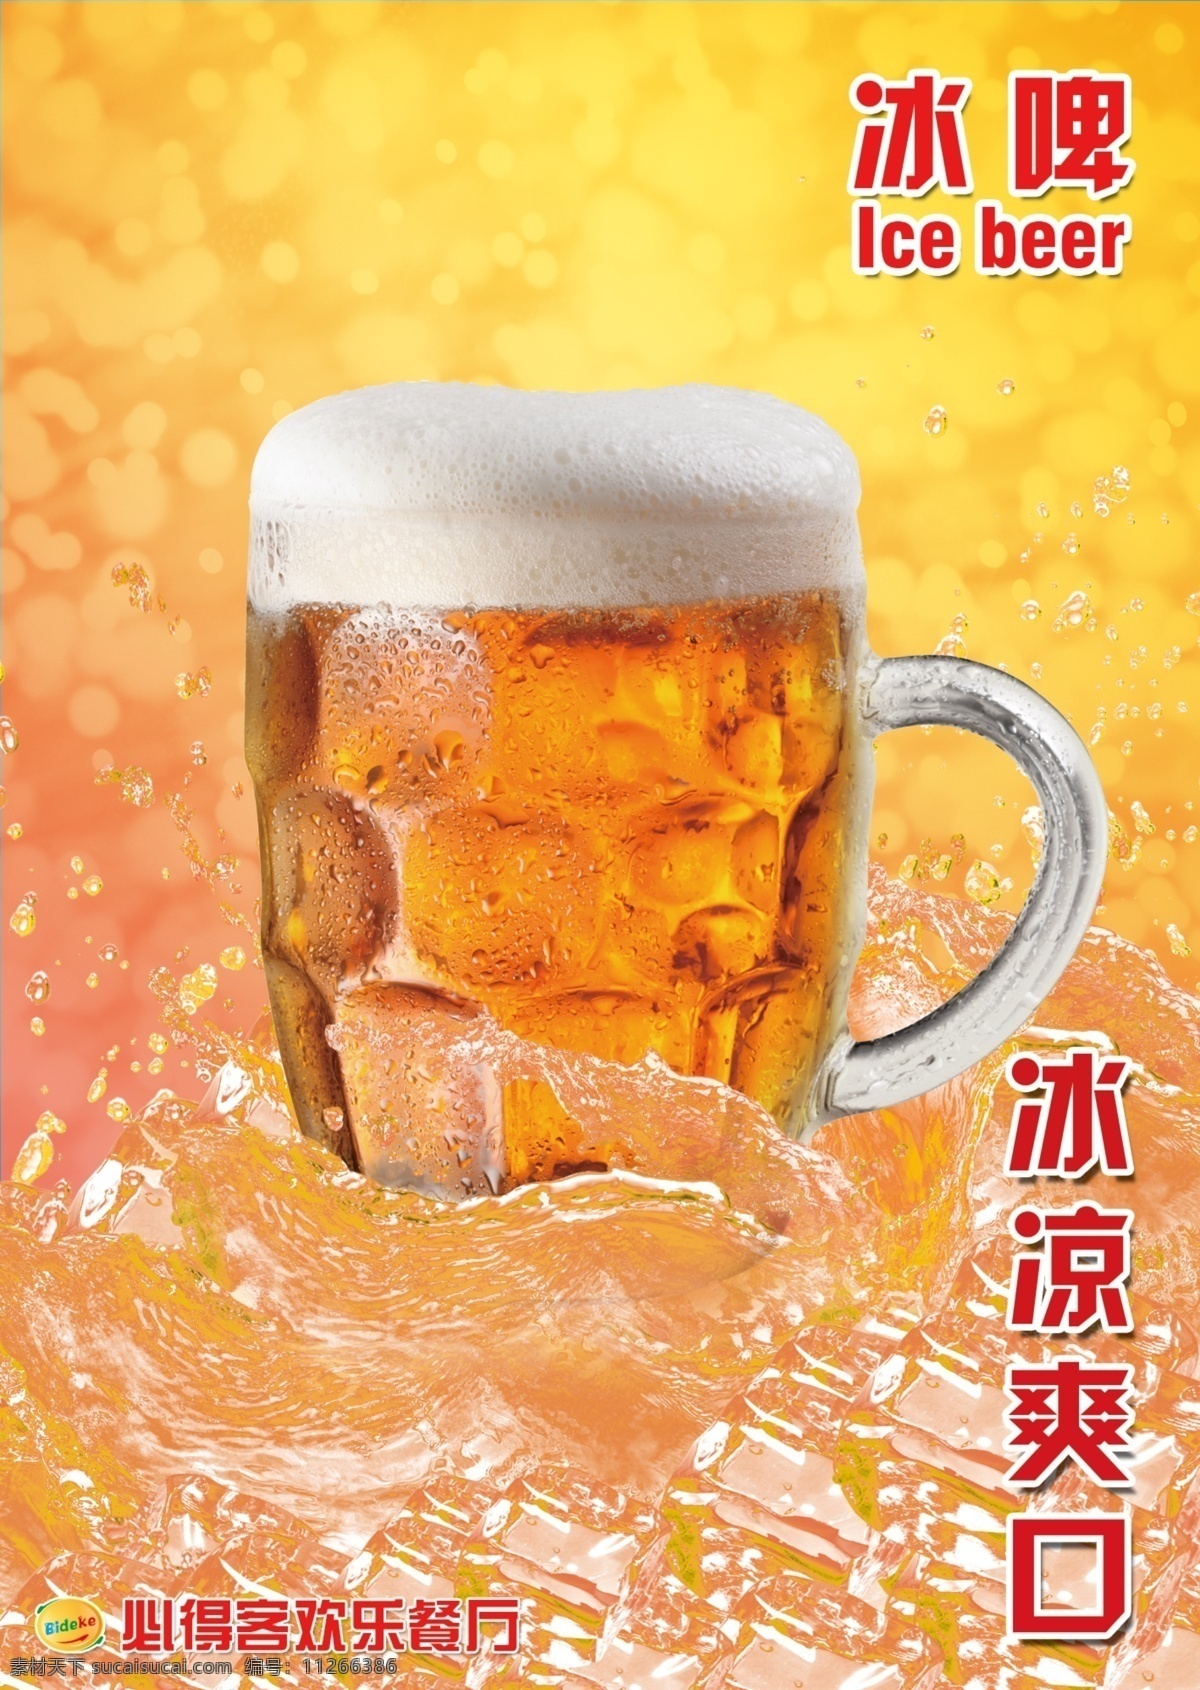 冰啤 啤酒 青岛 惠泉 扎啤展板 扎啤素材下载 扎啤模板下载 七彩扎啤 冰山素材 冰山模板 展板模板 广告设计模板 源文件